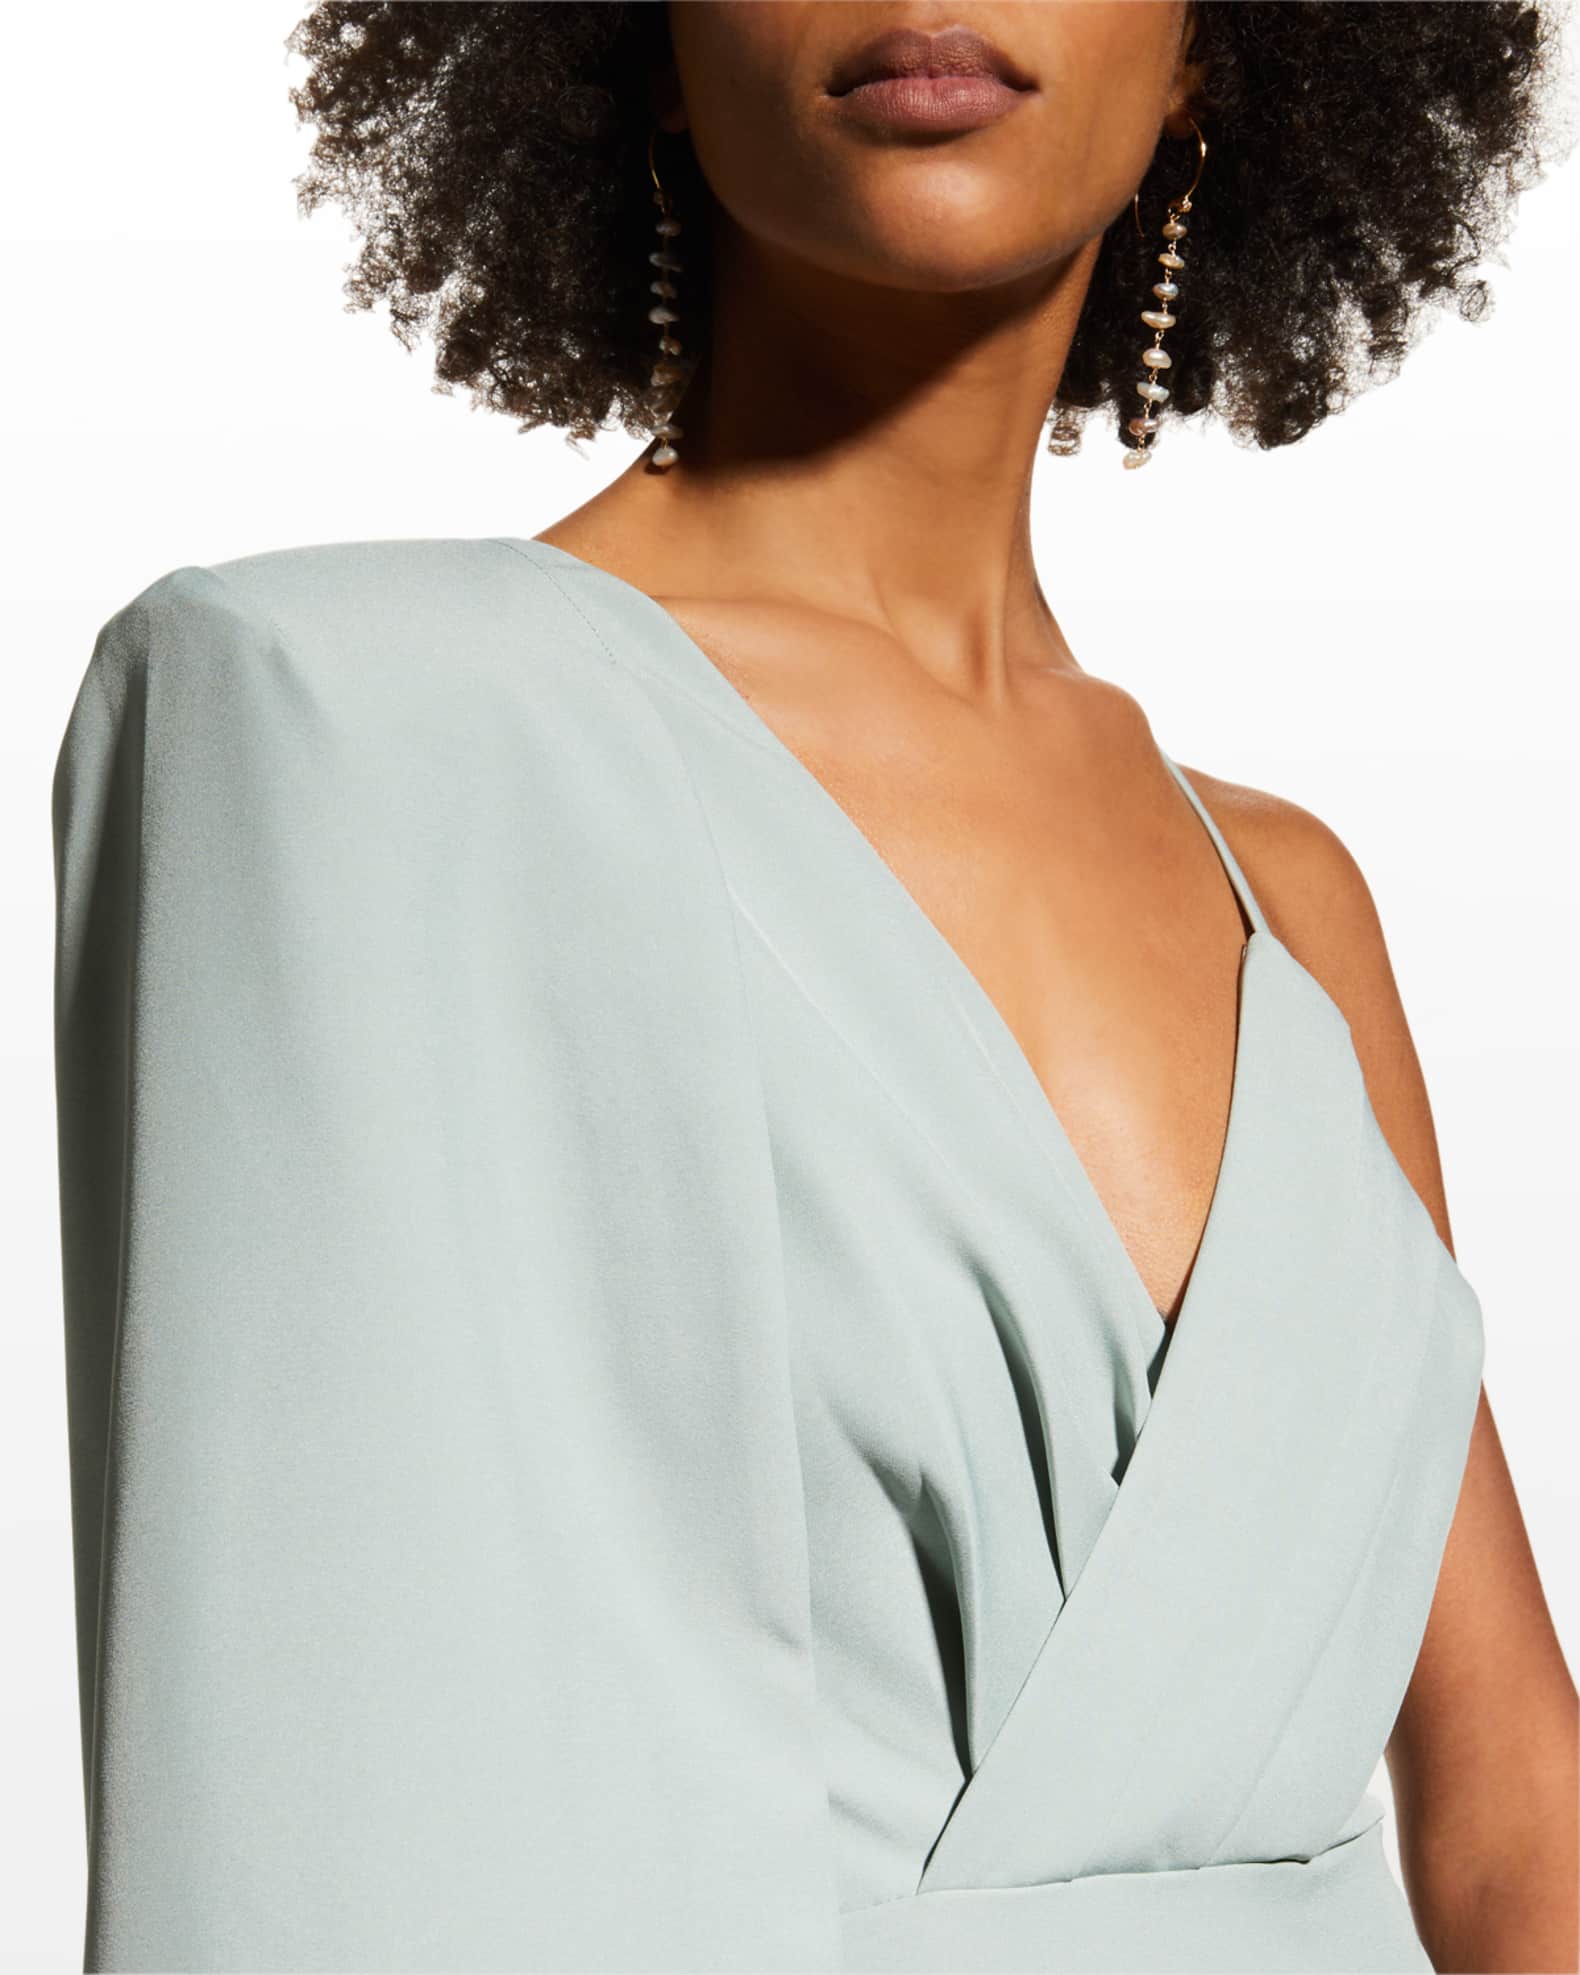 Lavish Alice Pleated Cape-Sleeve Midi Dress | Neiman Marcus